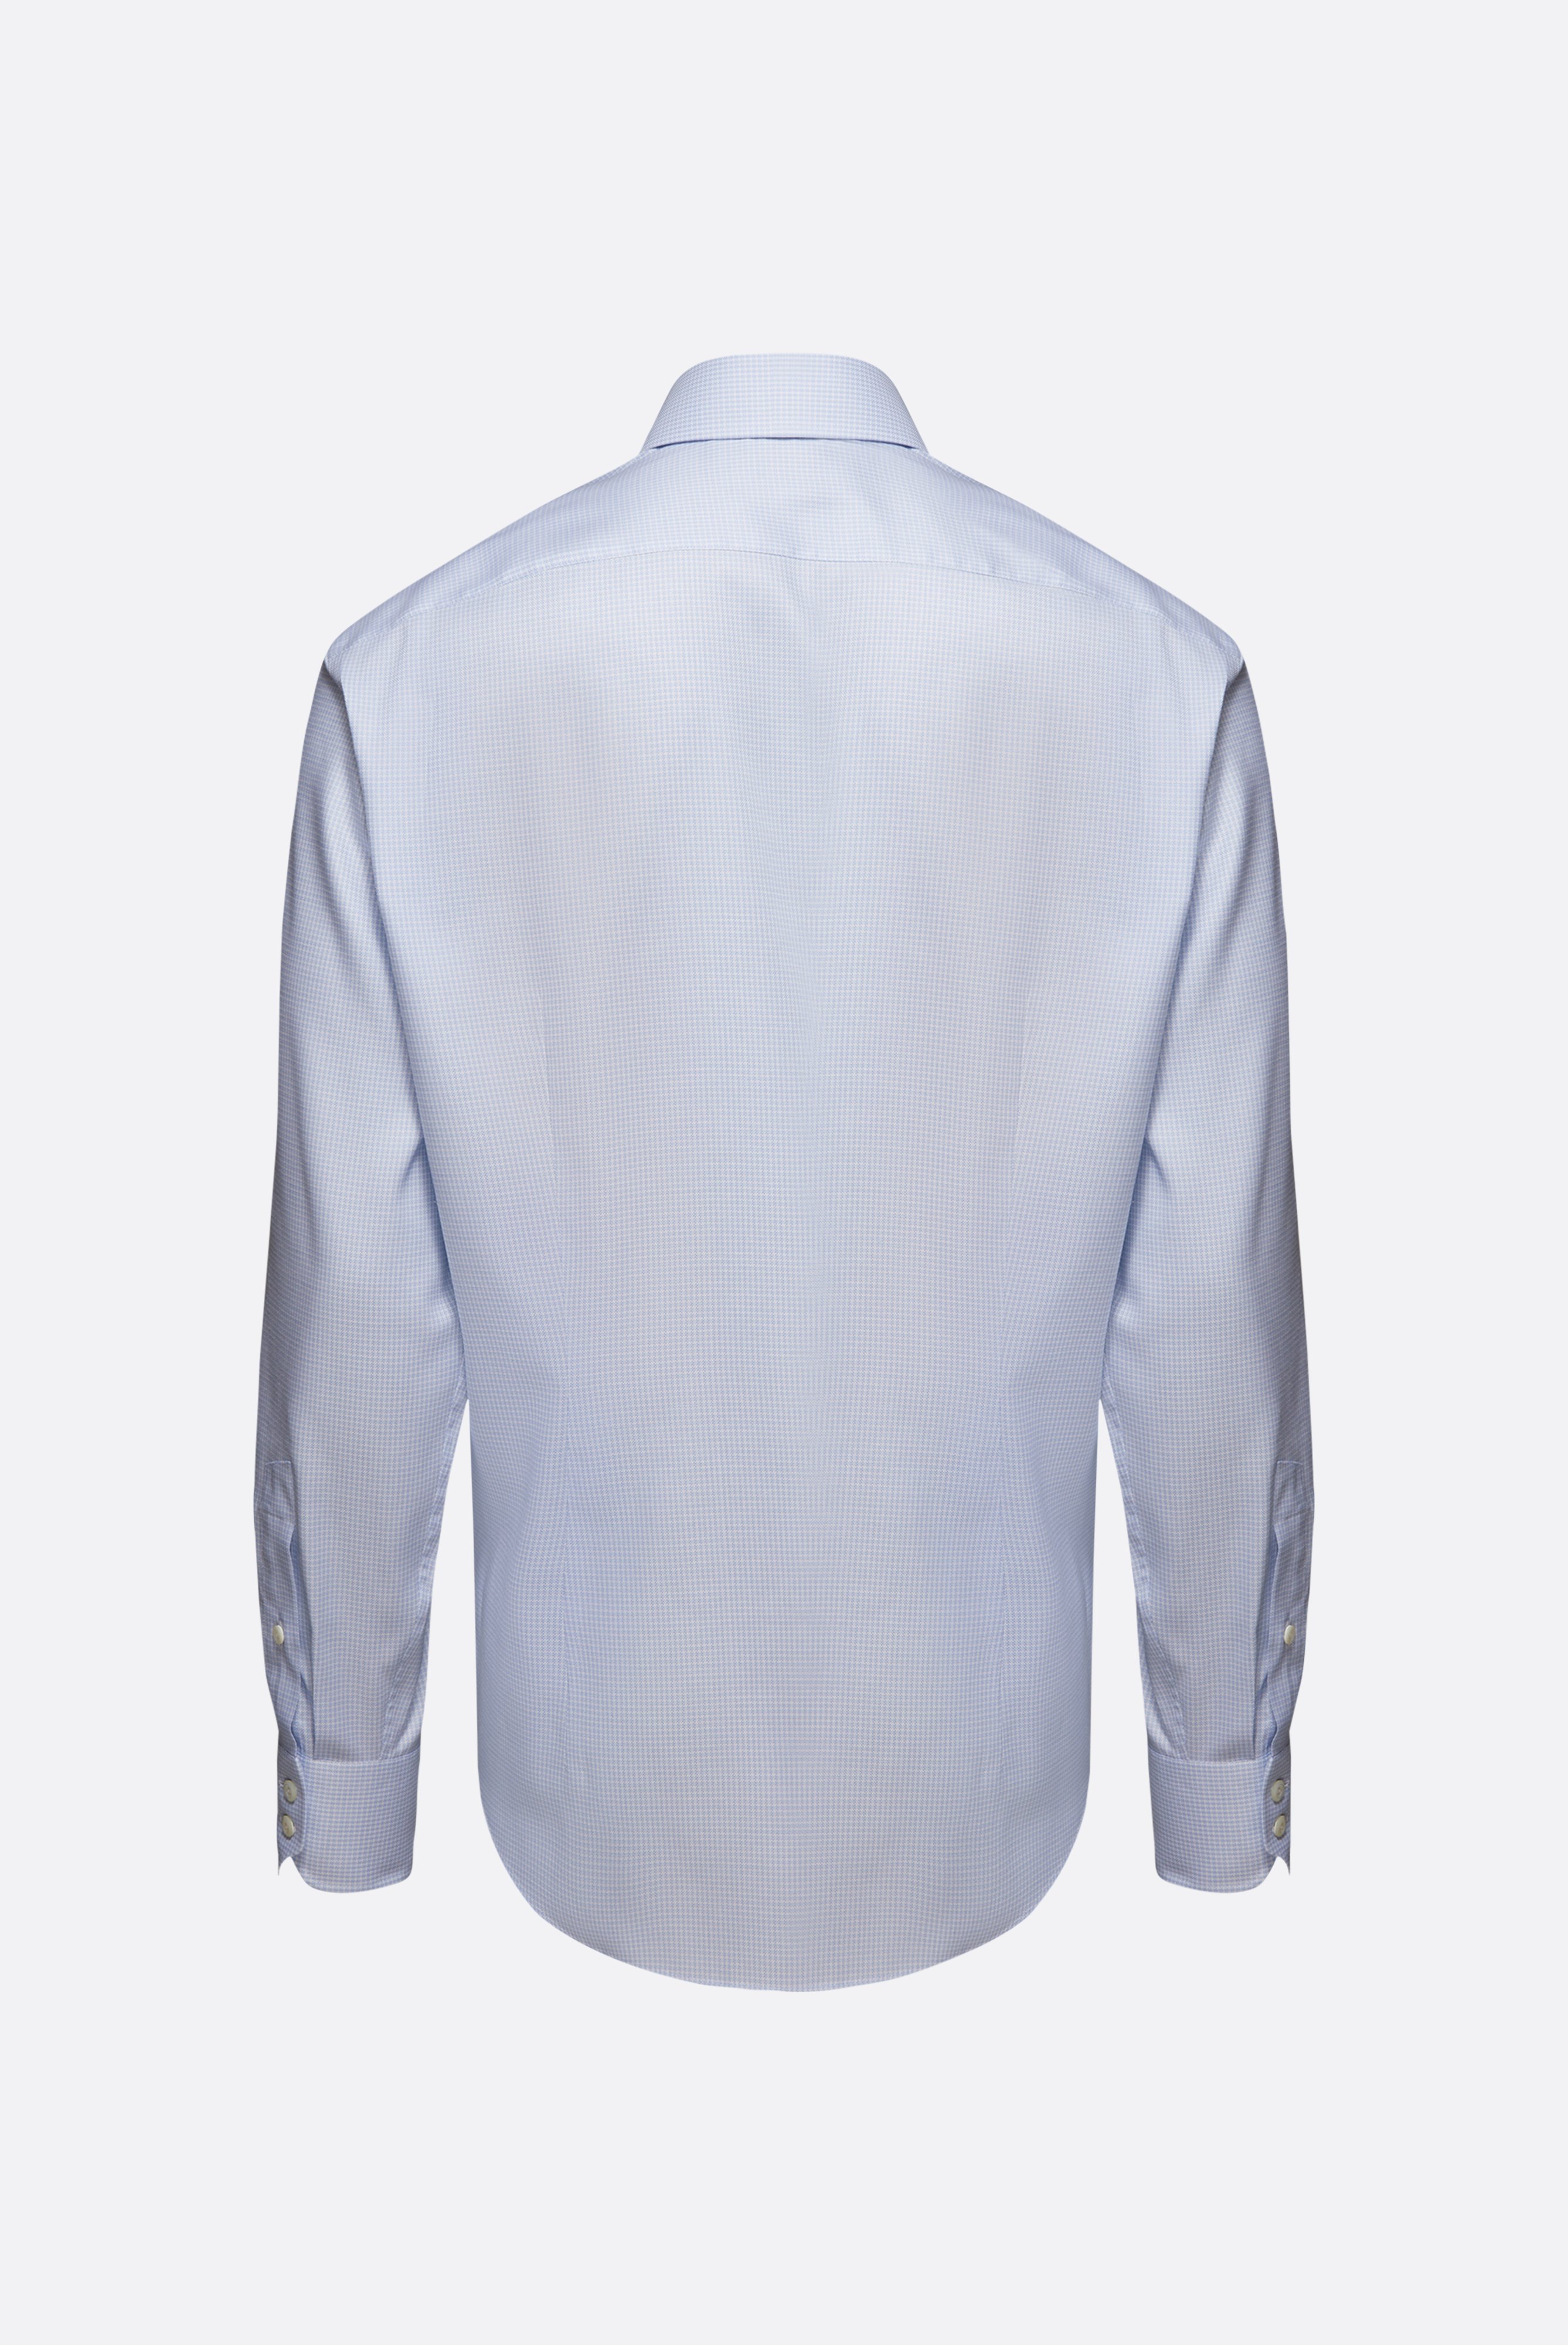 Bügelleichte Hemden+Bügelfreies Hemd mit Hahnentrittmuster Tailor Fit+20.2020.BQ.161101.720.41